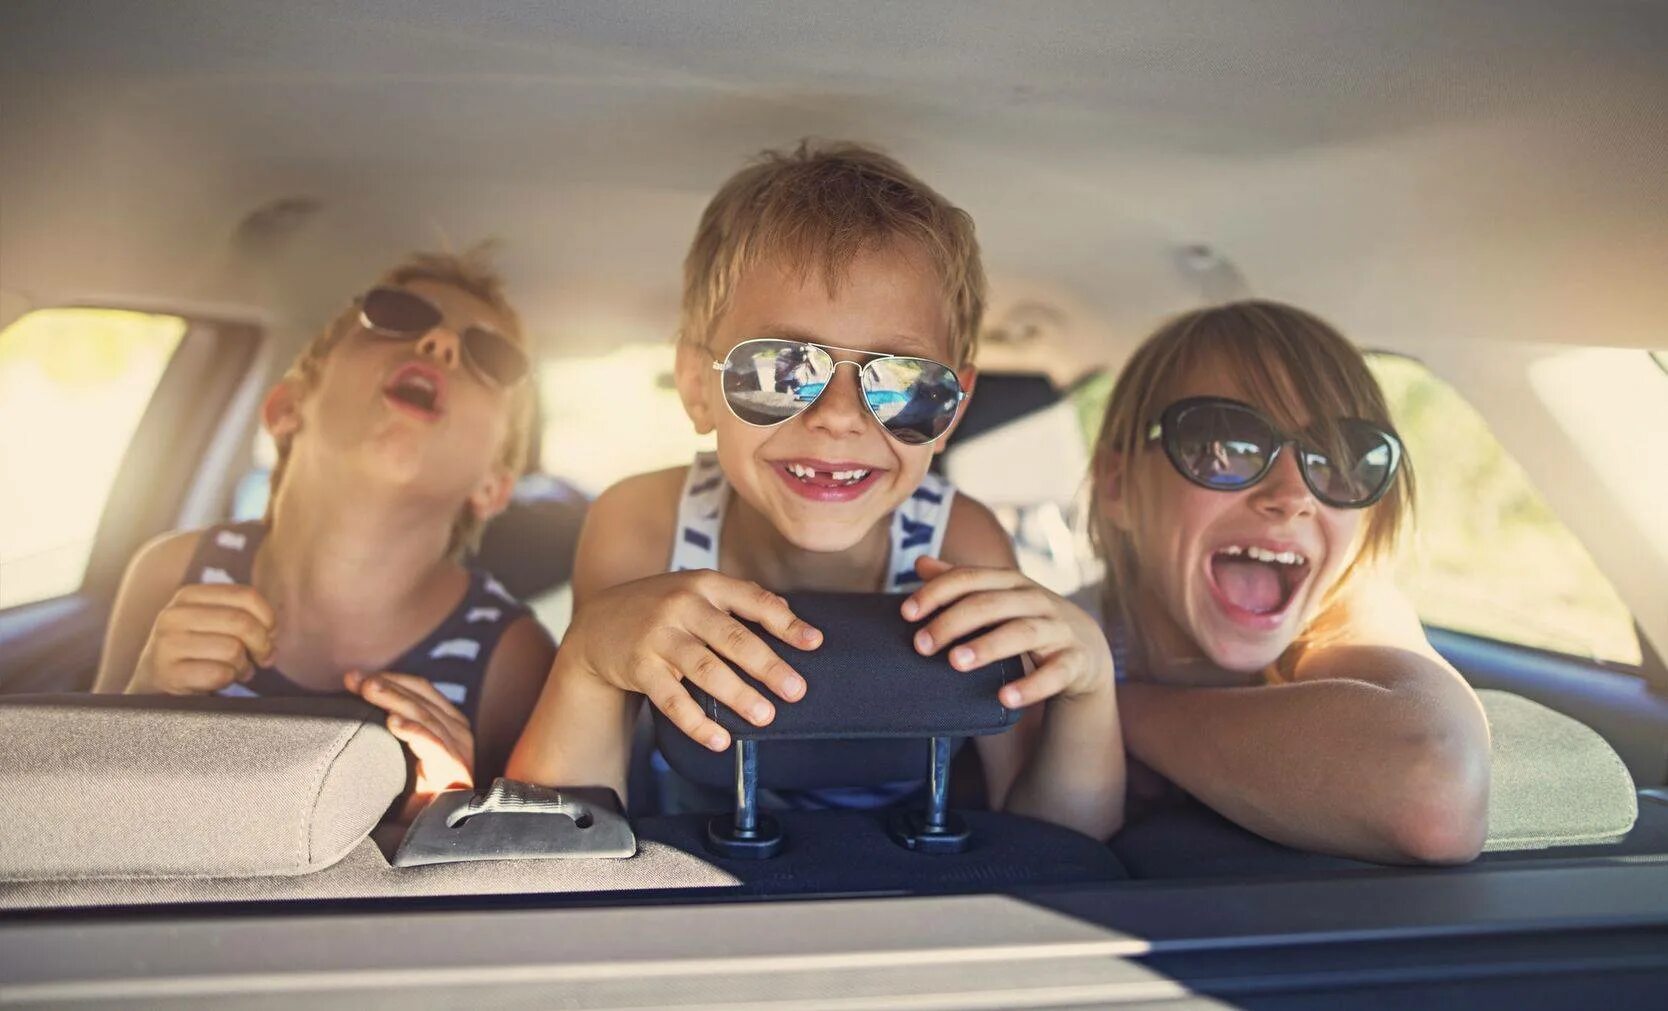 Веселое в машину слушать. Дети путешествуют. Поездка с детьми. Путешествие на машине с детьми. Машина для путешествий семьей.